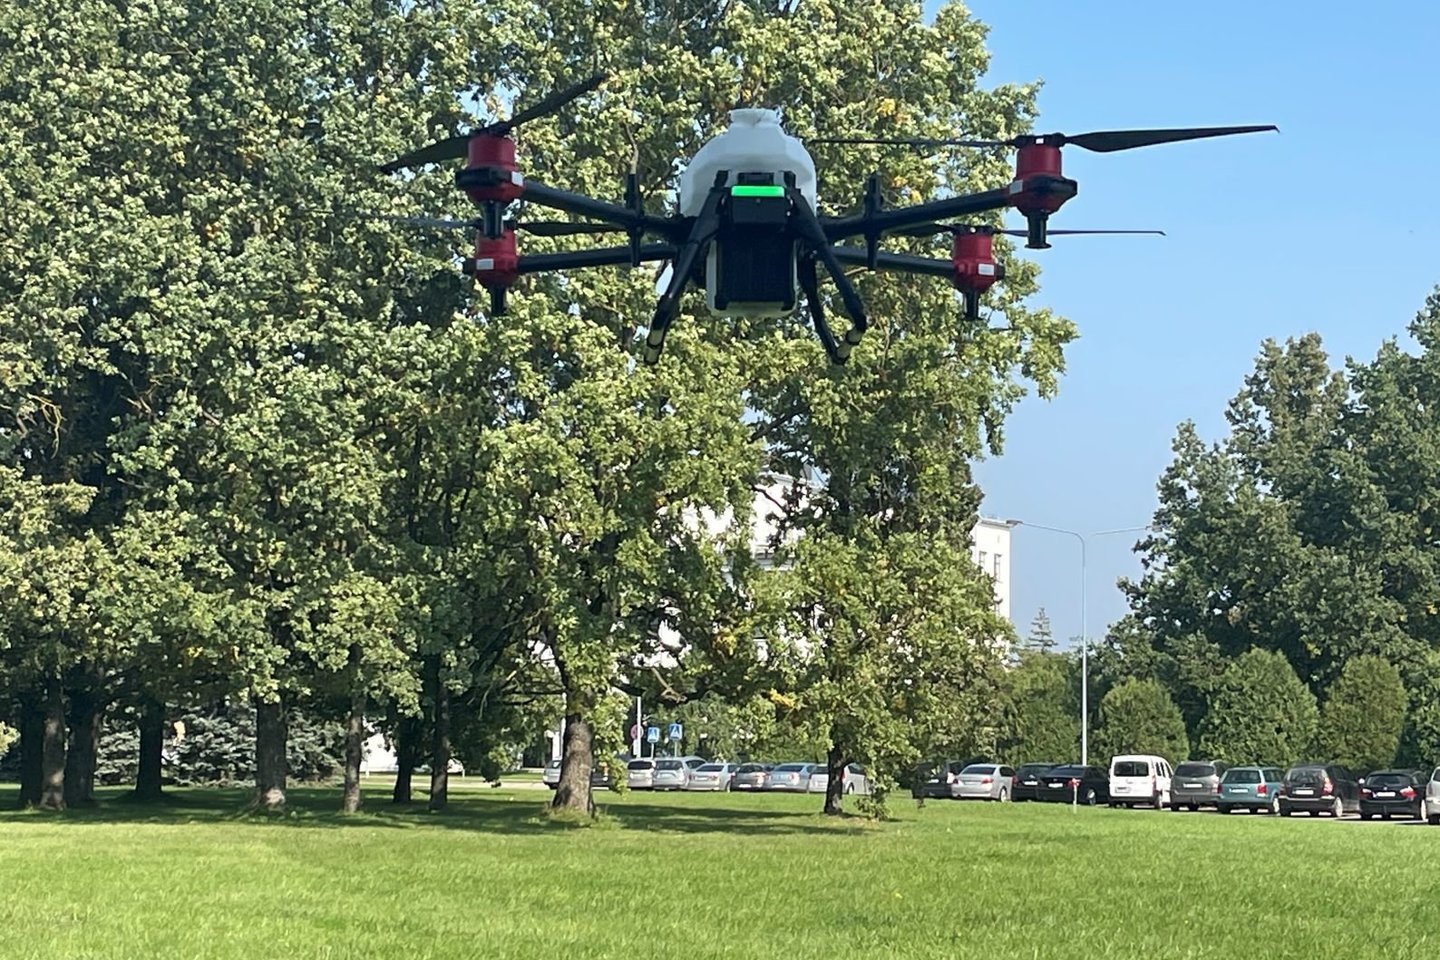 Stulbinančiu greičiu tobulėjančios dronų technologijos atveria naujas galimybes žemės ūkio sektoriuje.